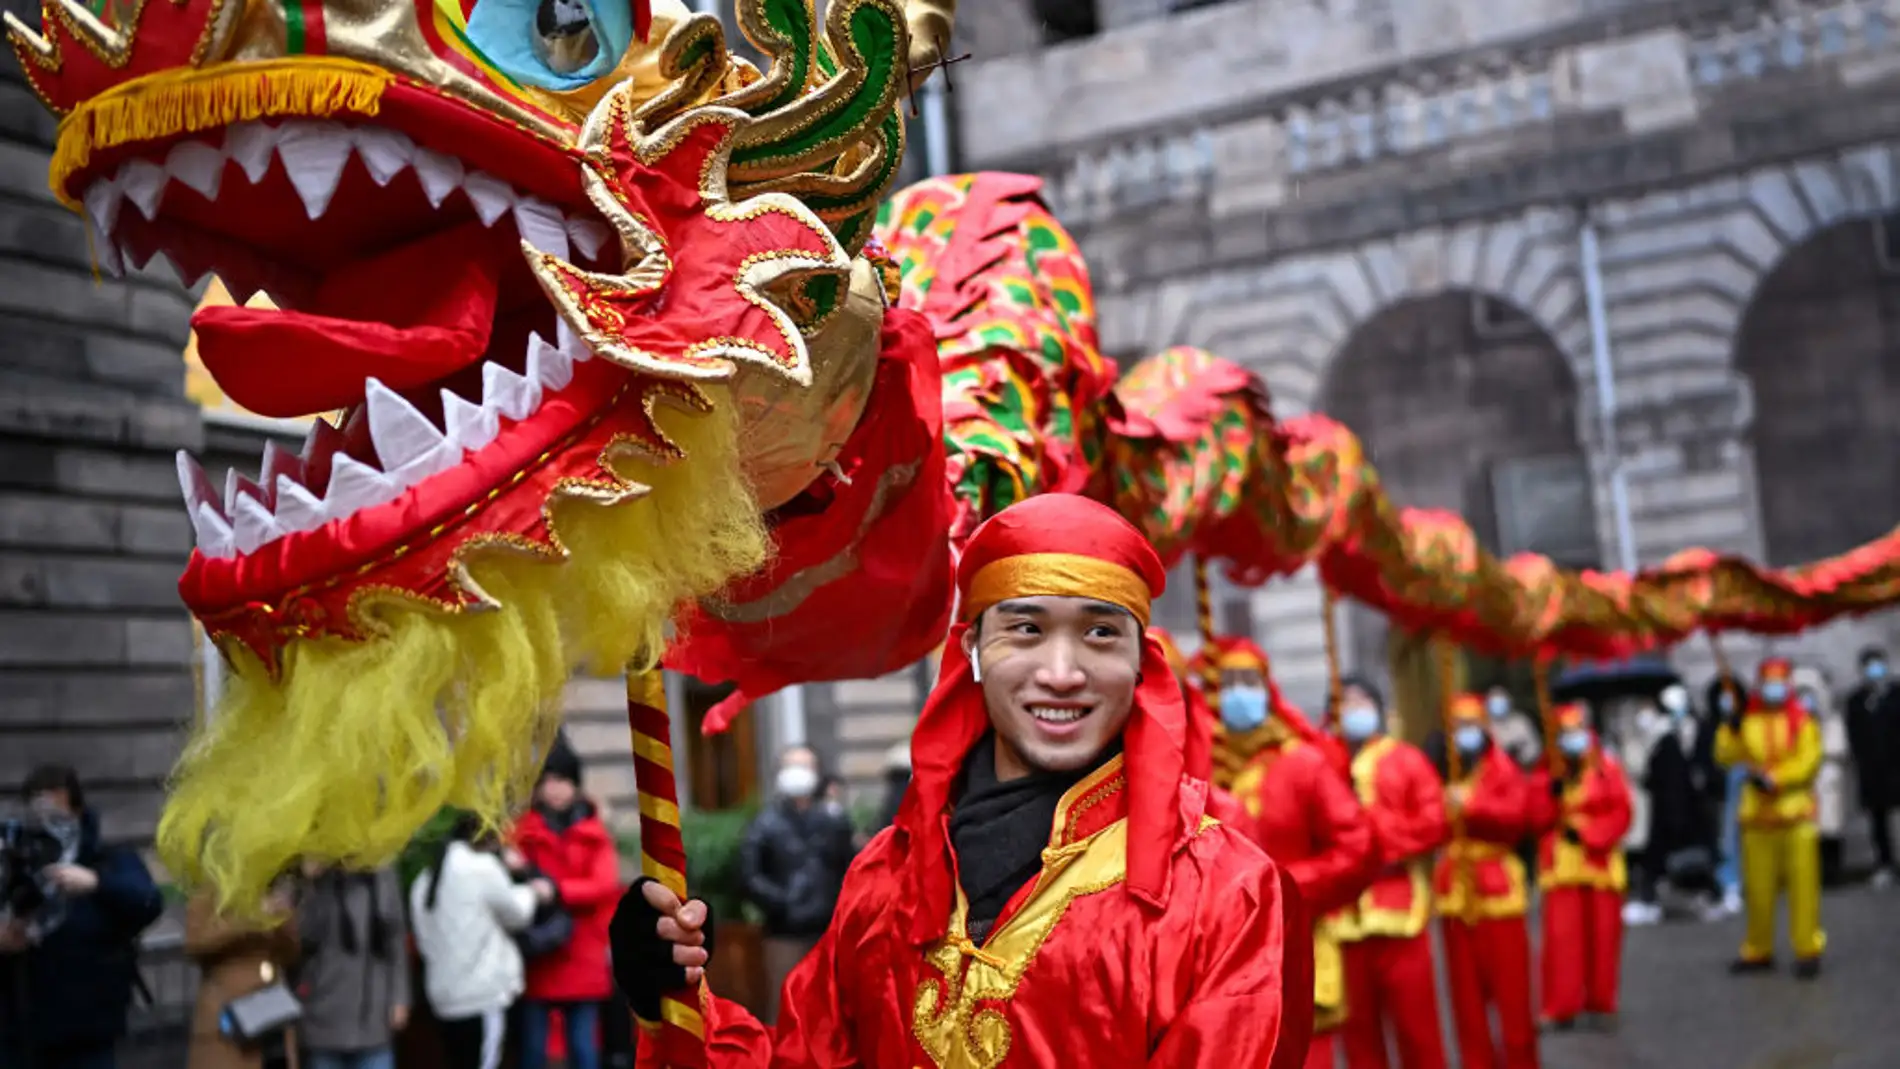 Año nuevo chino: los mejores asiáticos para comer por menos de 20 euros, según este experto